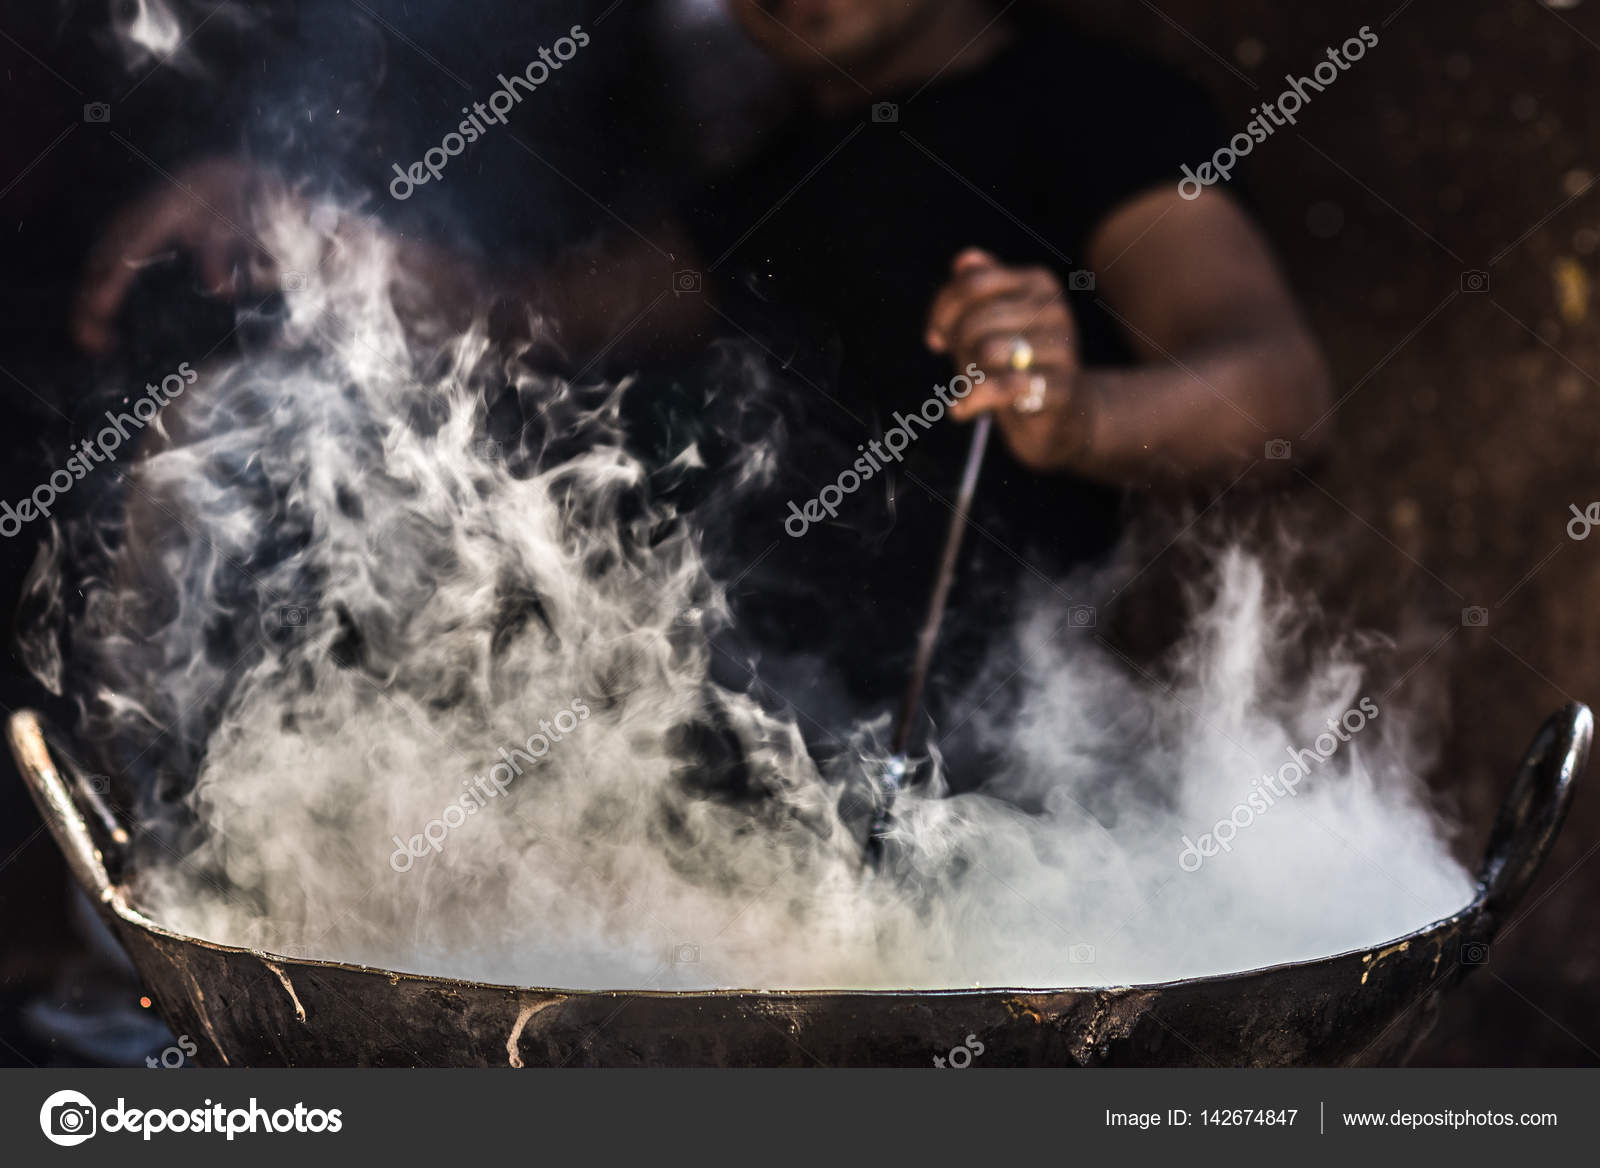 https://st3.depositphotos.com/1834167/14267/i/1600/depositphotos_142674847-stock-photo-unrecognizable-man-cooking-in-fatiscent.jpg